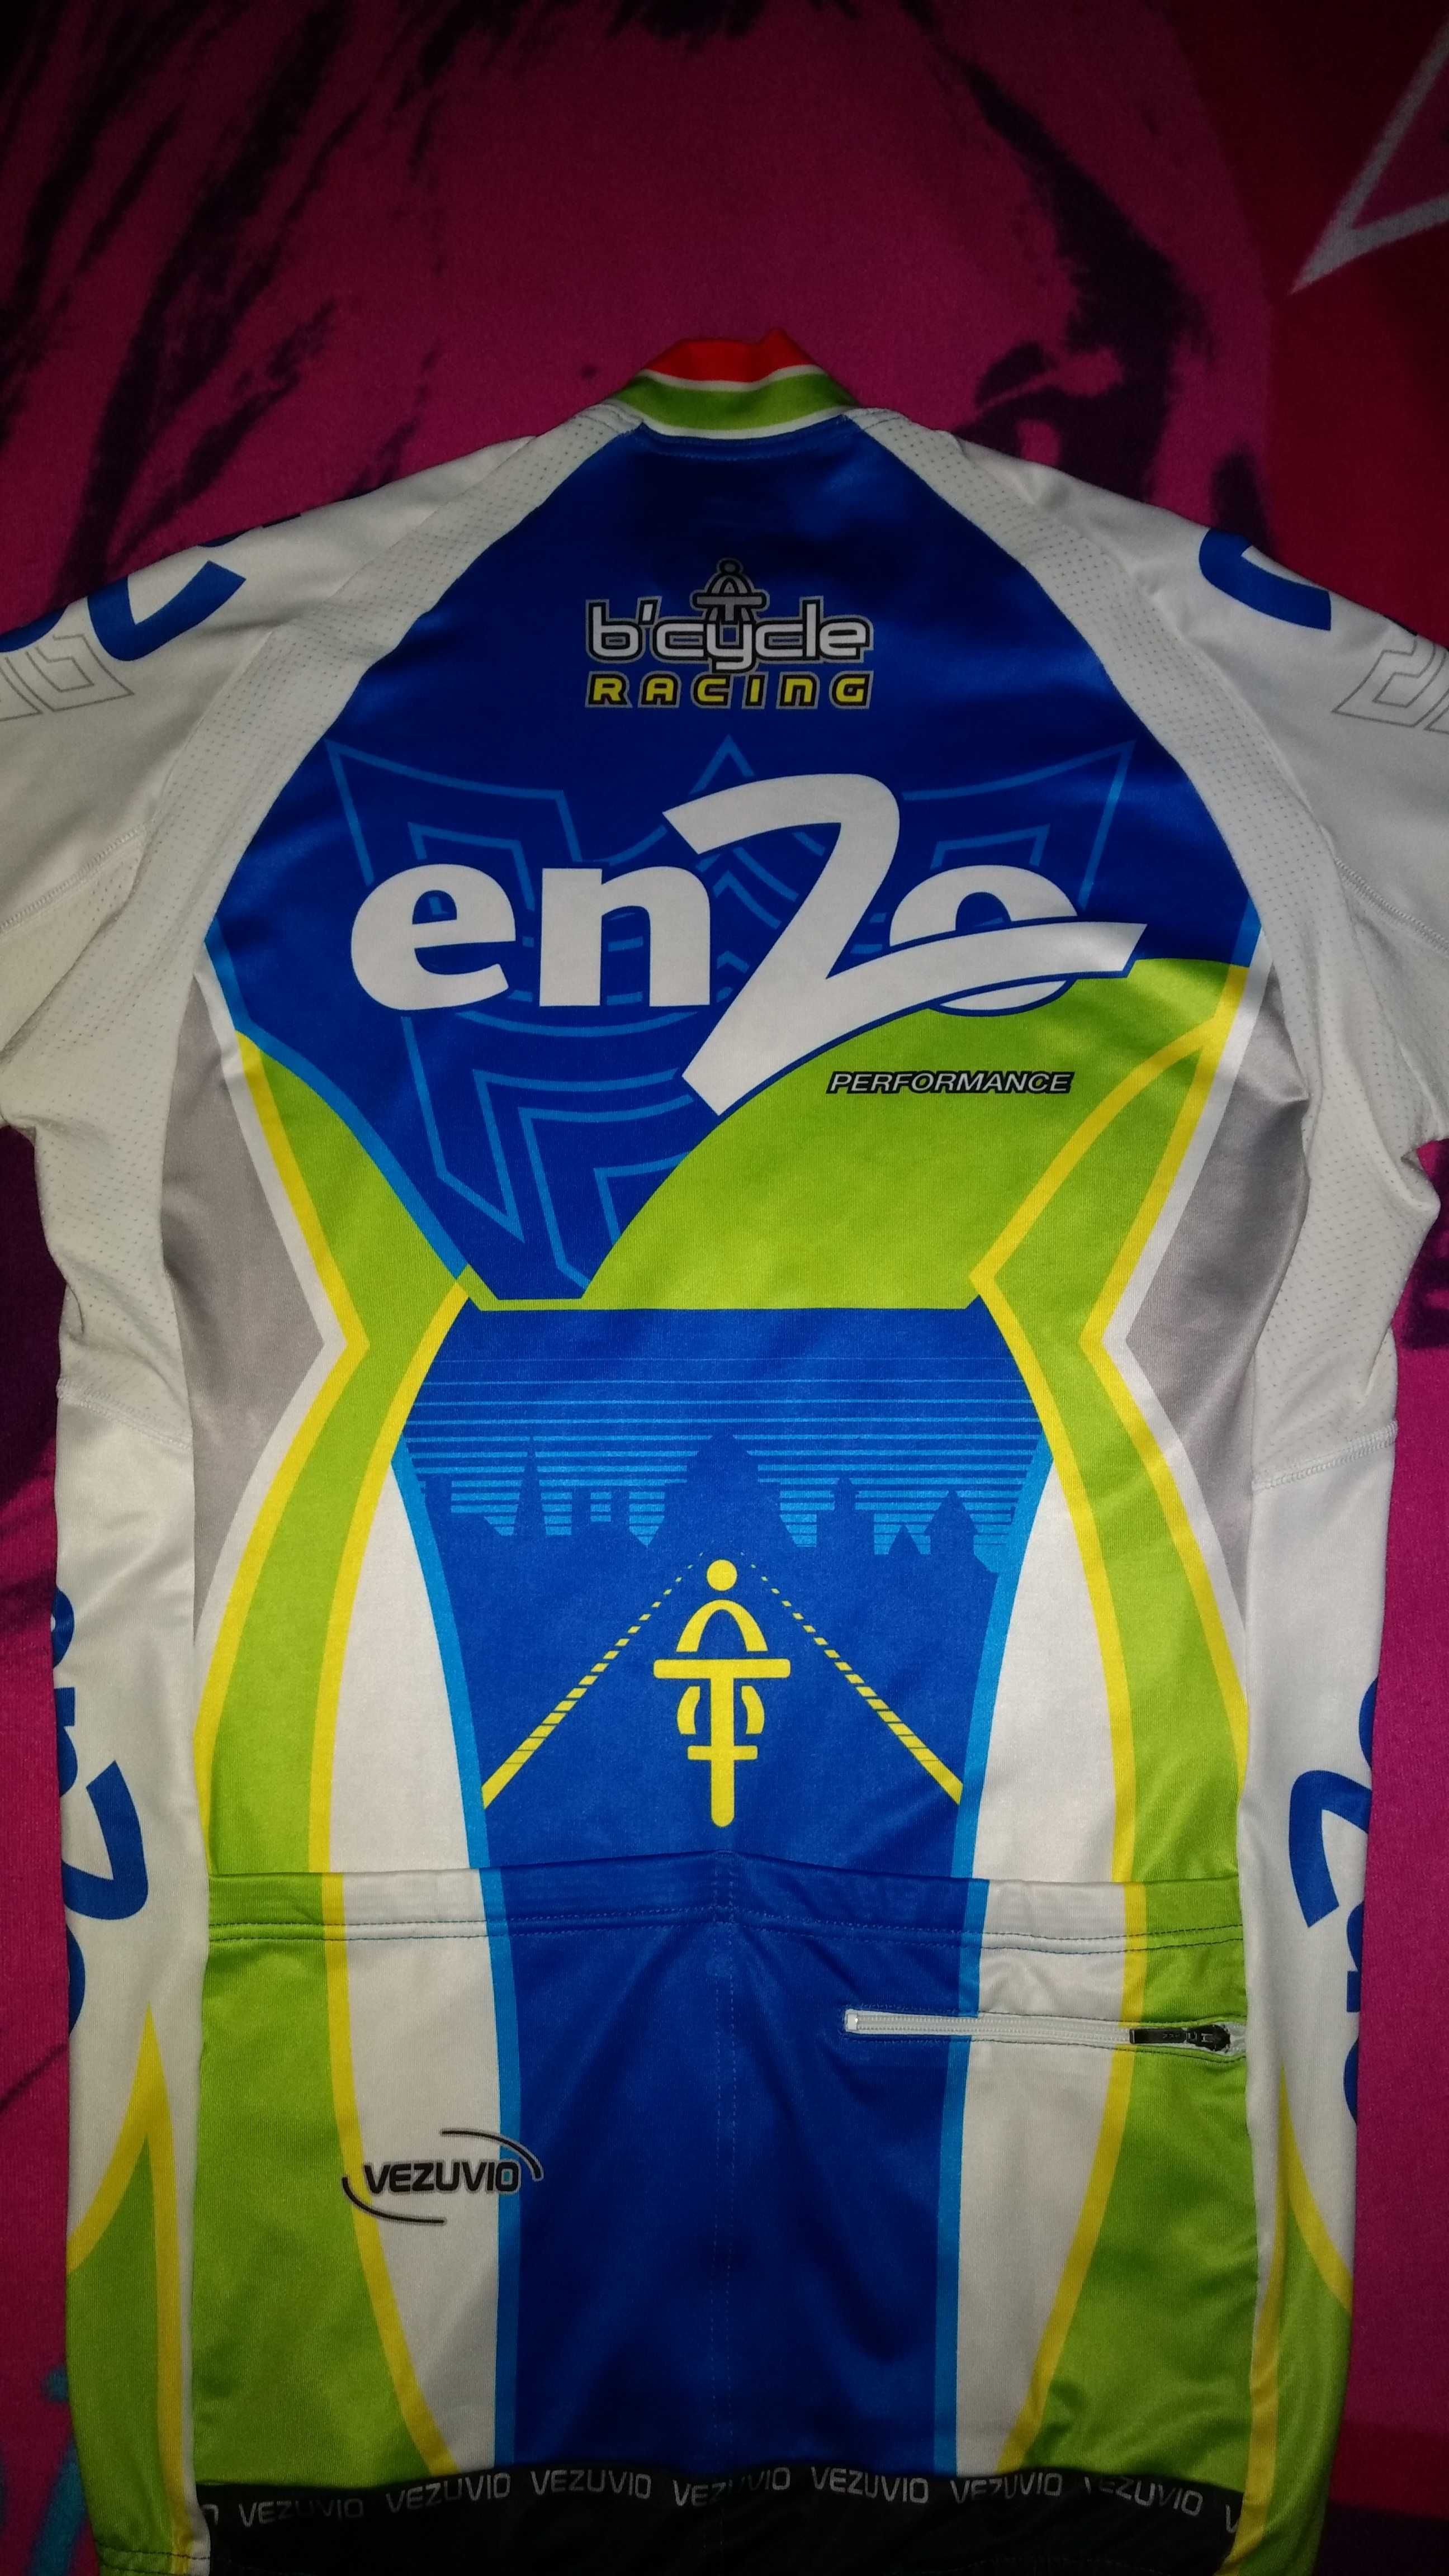 Koszulka kolarska Vezuvio Enzo Bicycle Racing M